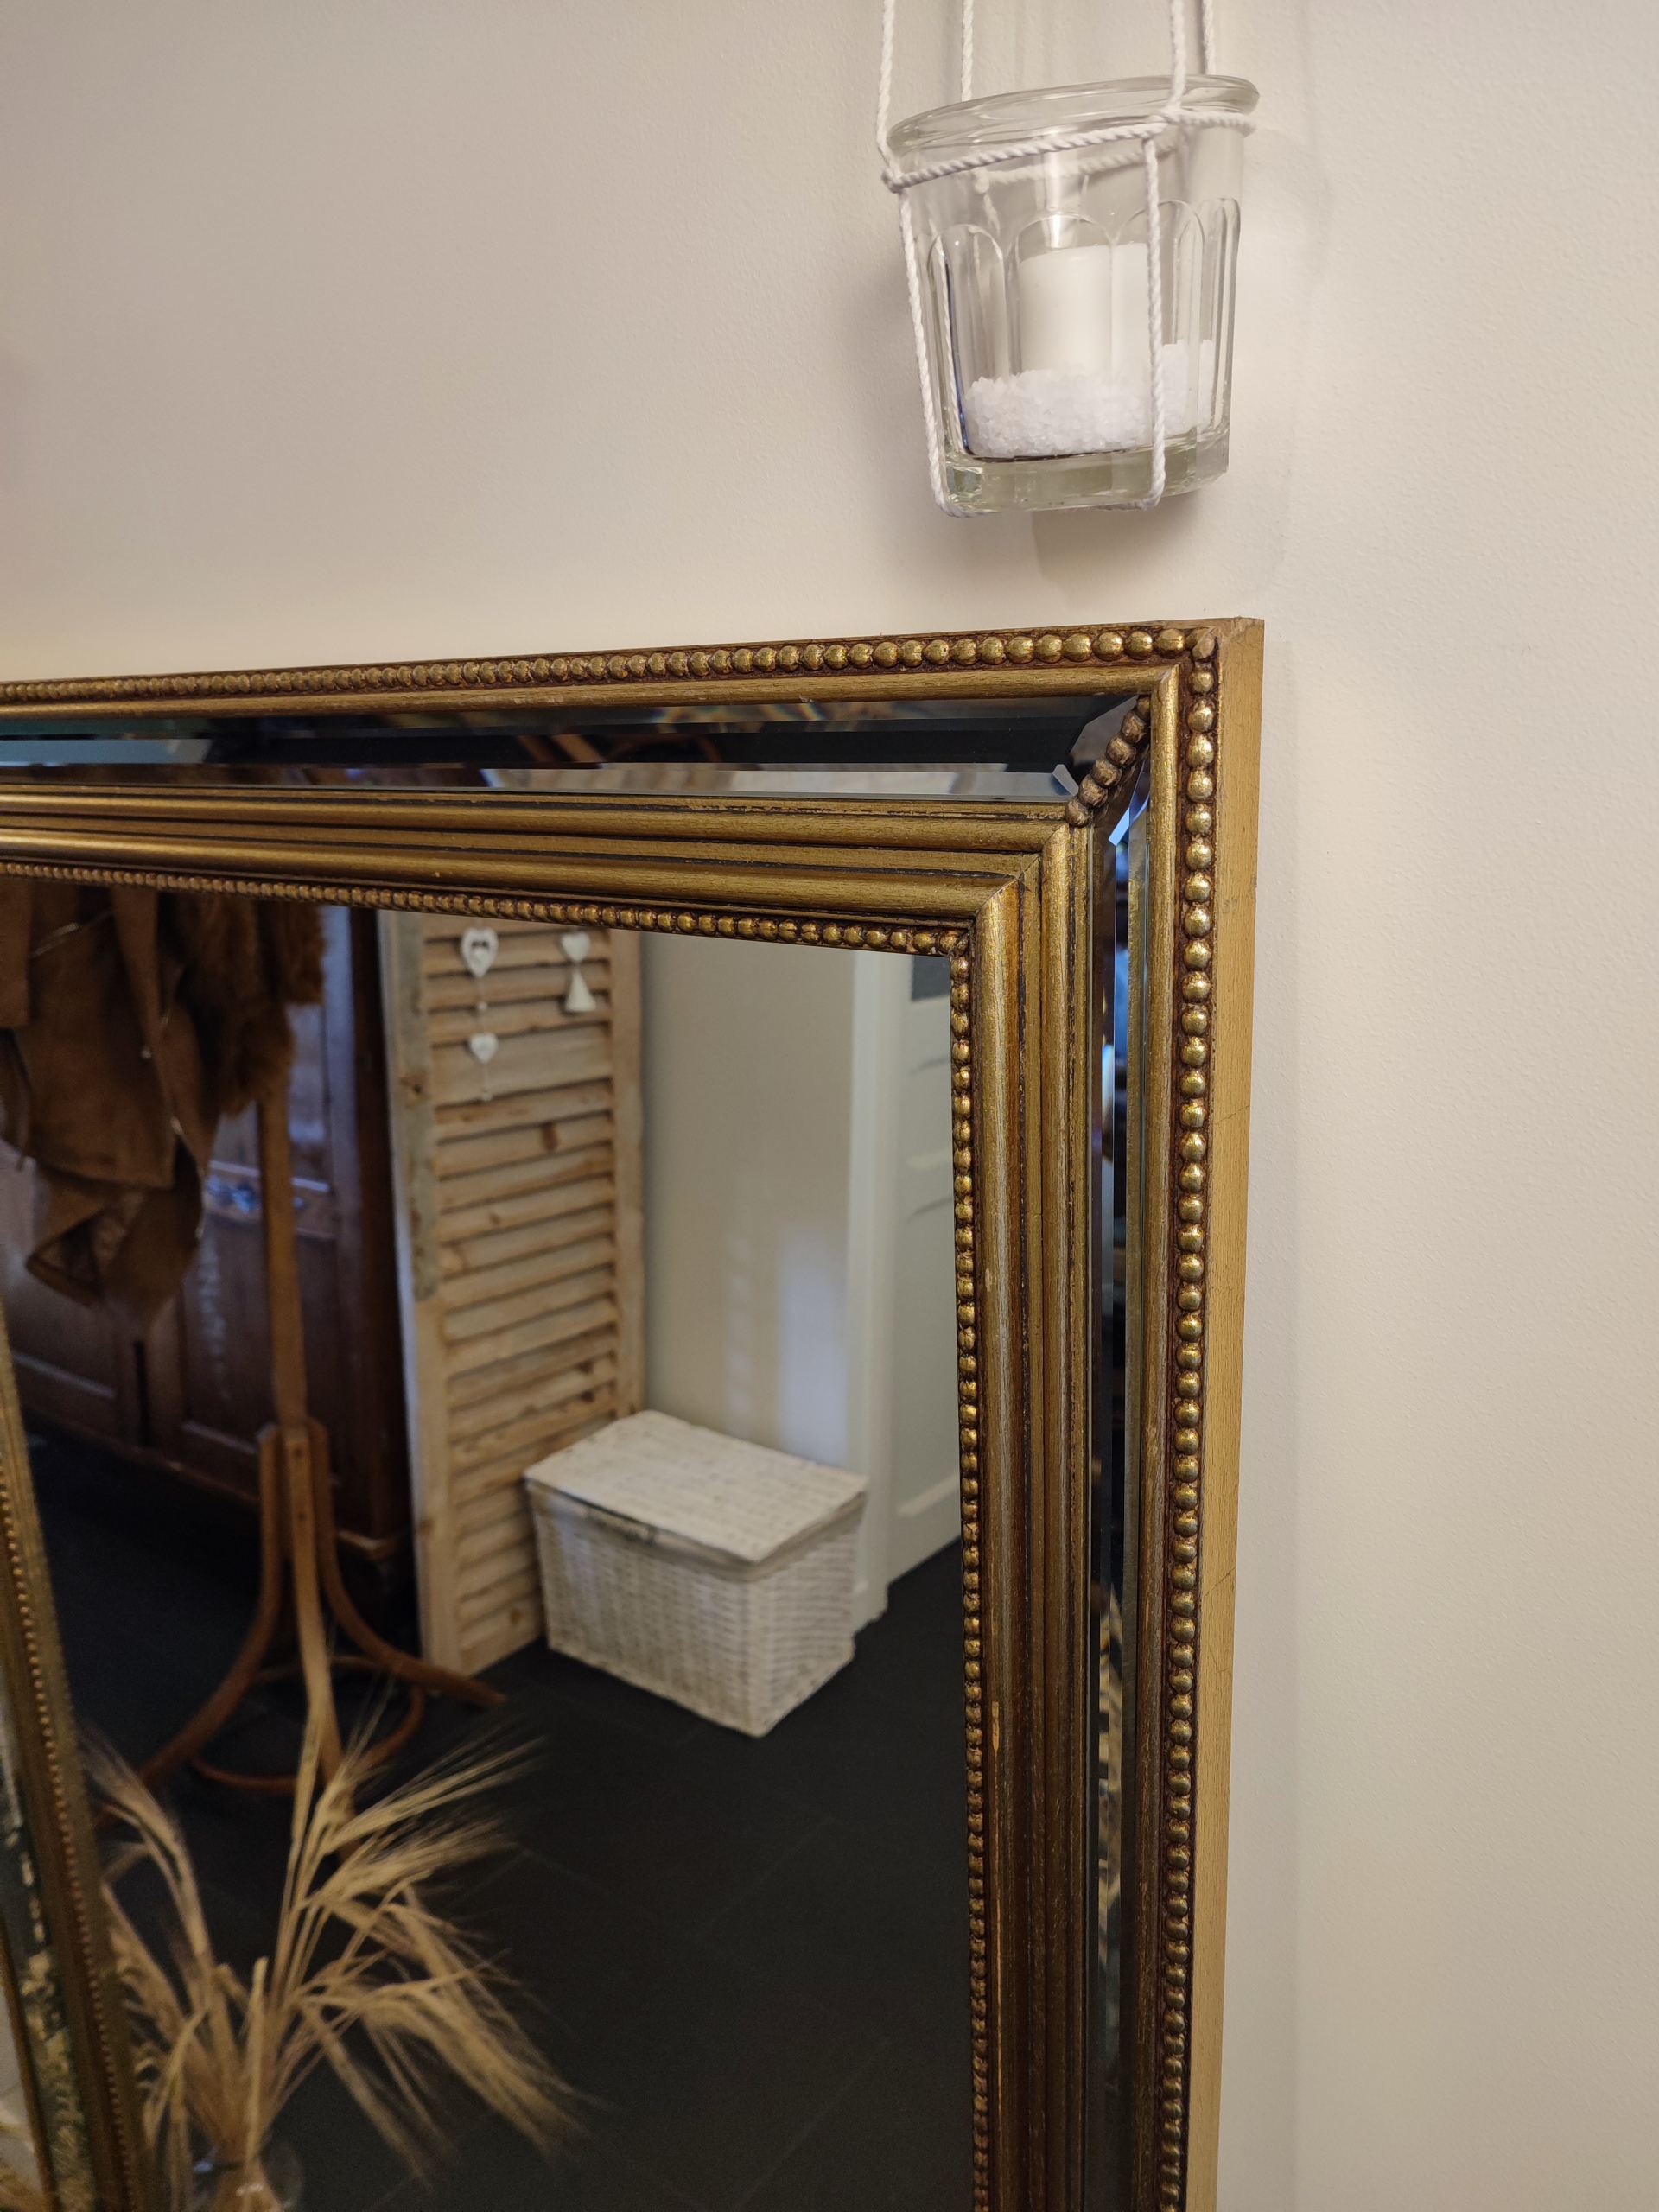 Ancien miroir de cheminée dont il ne restait plus que le cadre, "Jade" est devenu un beau miroir en pied. Son cadre doré patiné et sa petite bande de miroir au centre des dorures lui confèrent un look peu commun.